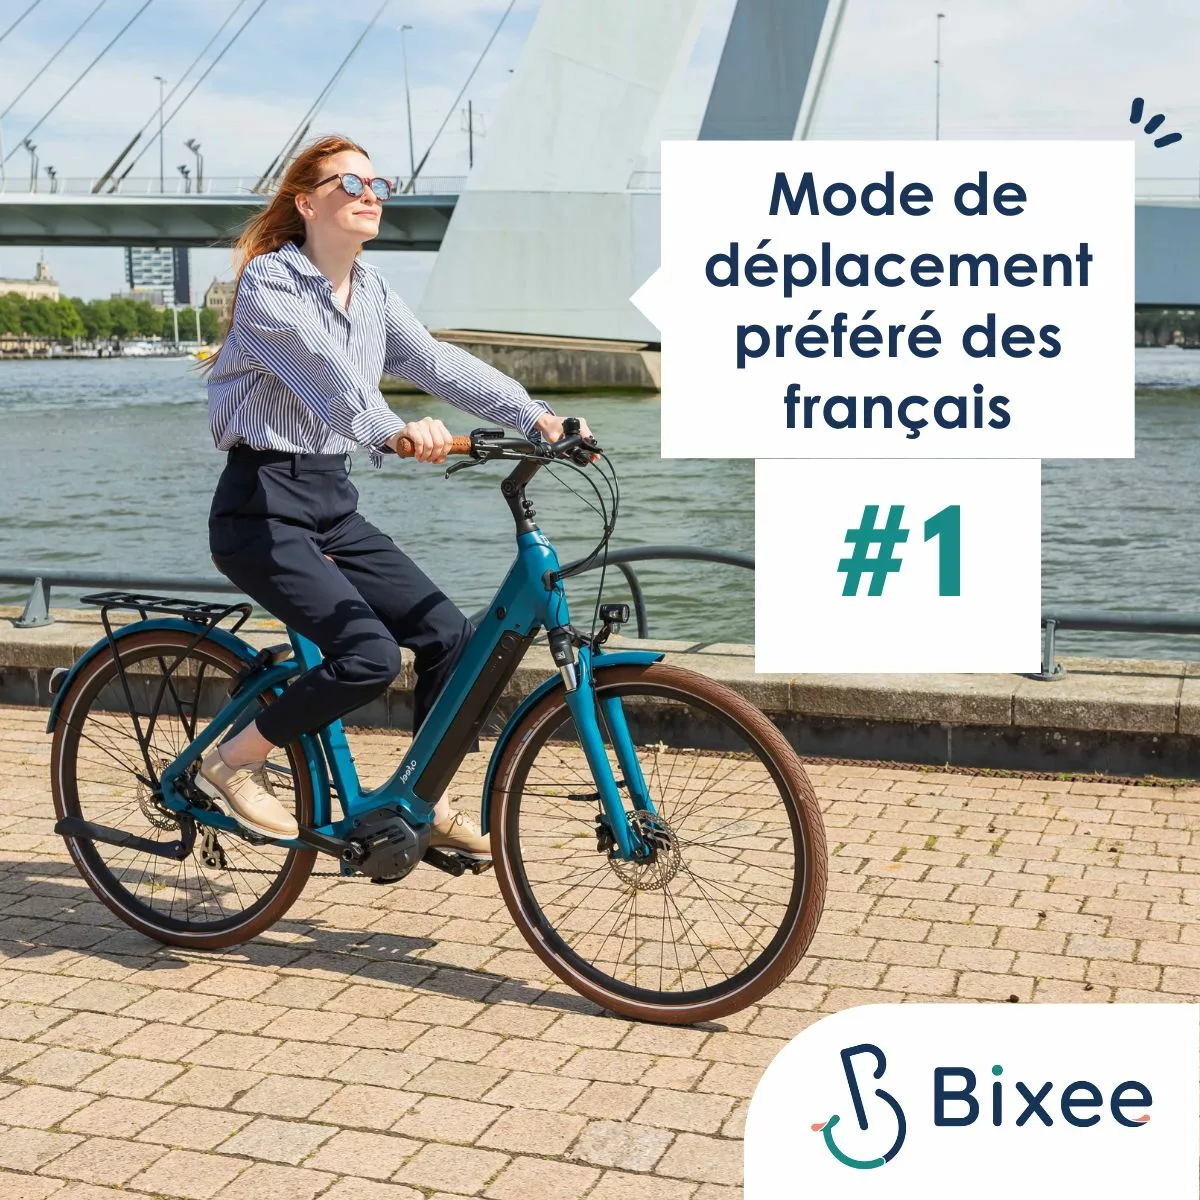 Le vélo reste le moyen de transport favori des Français !